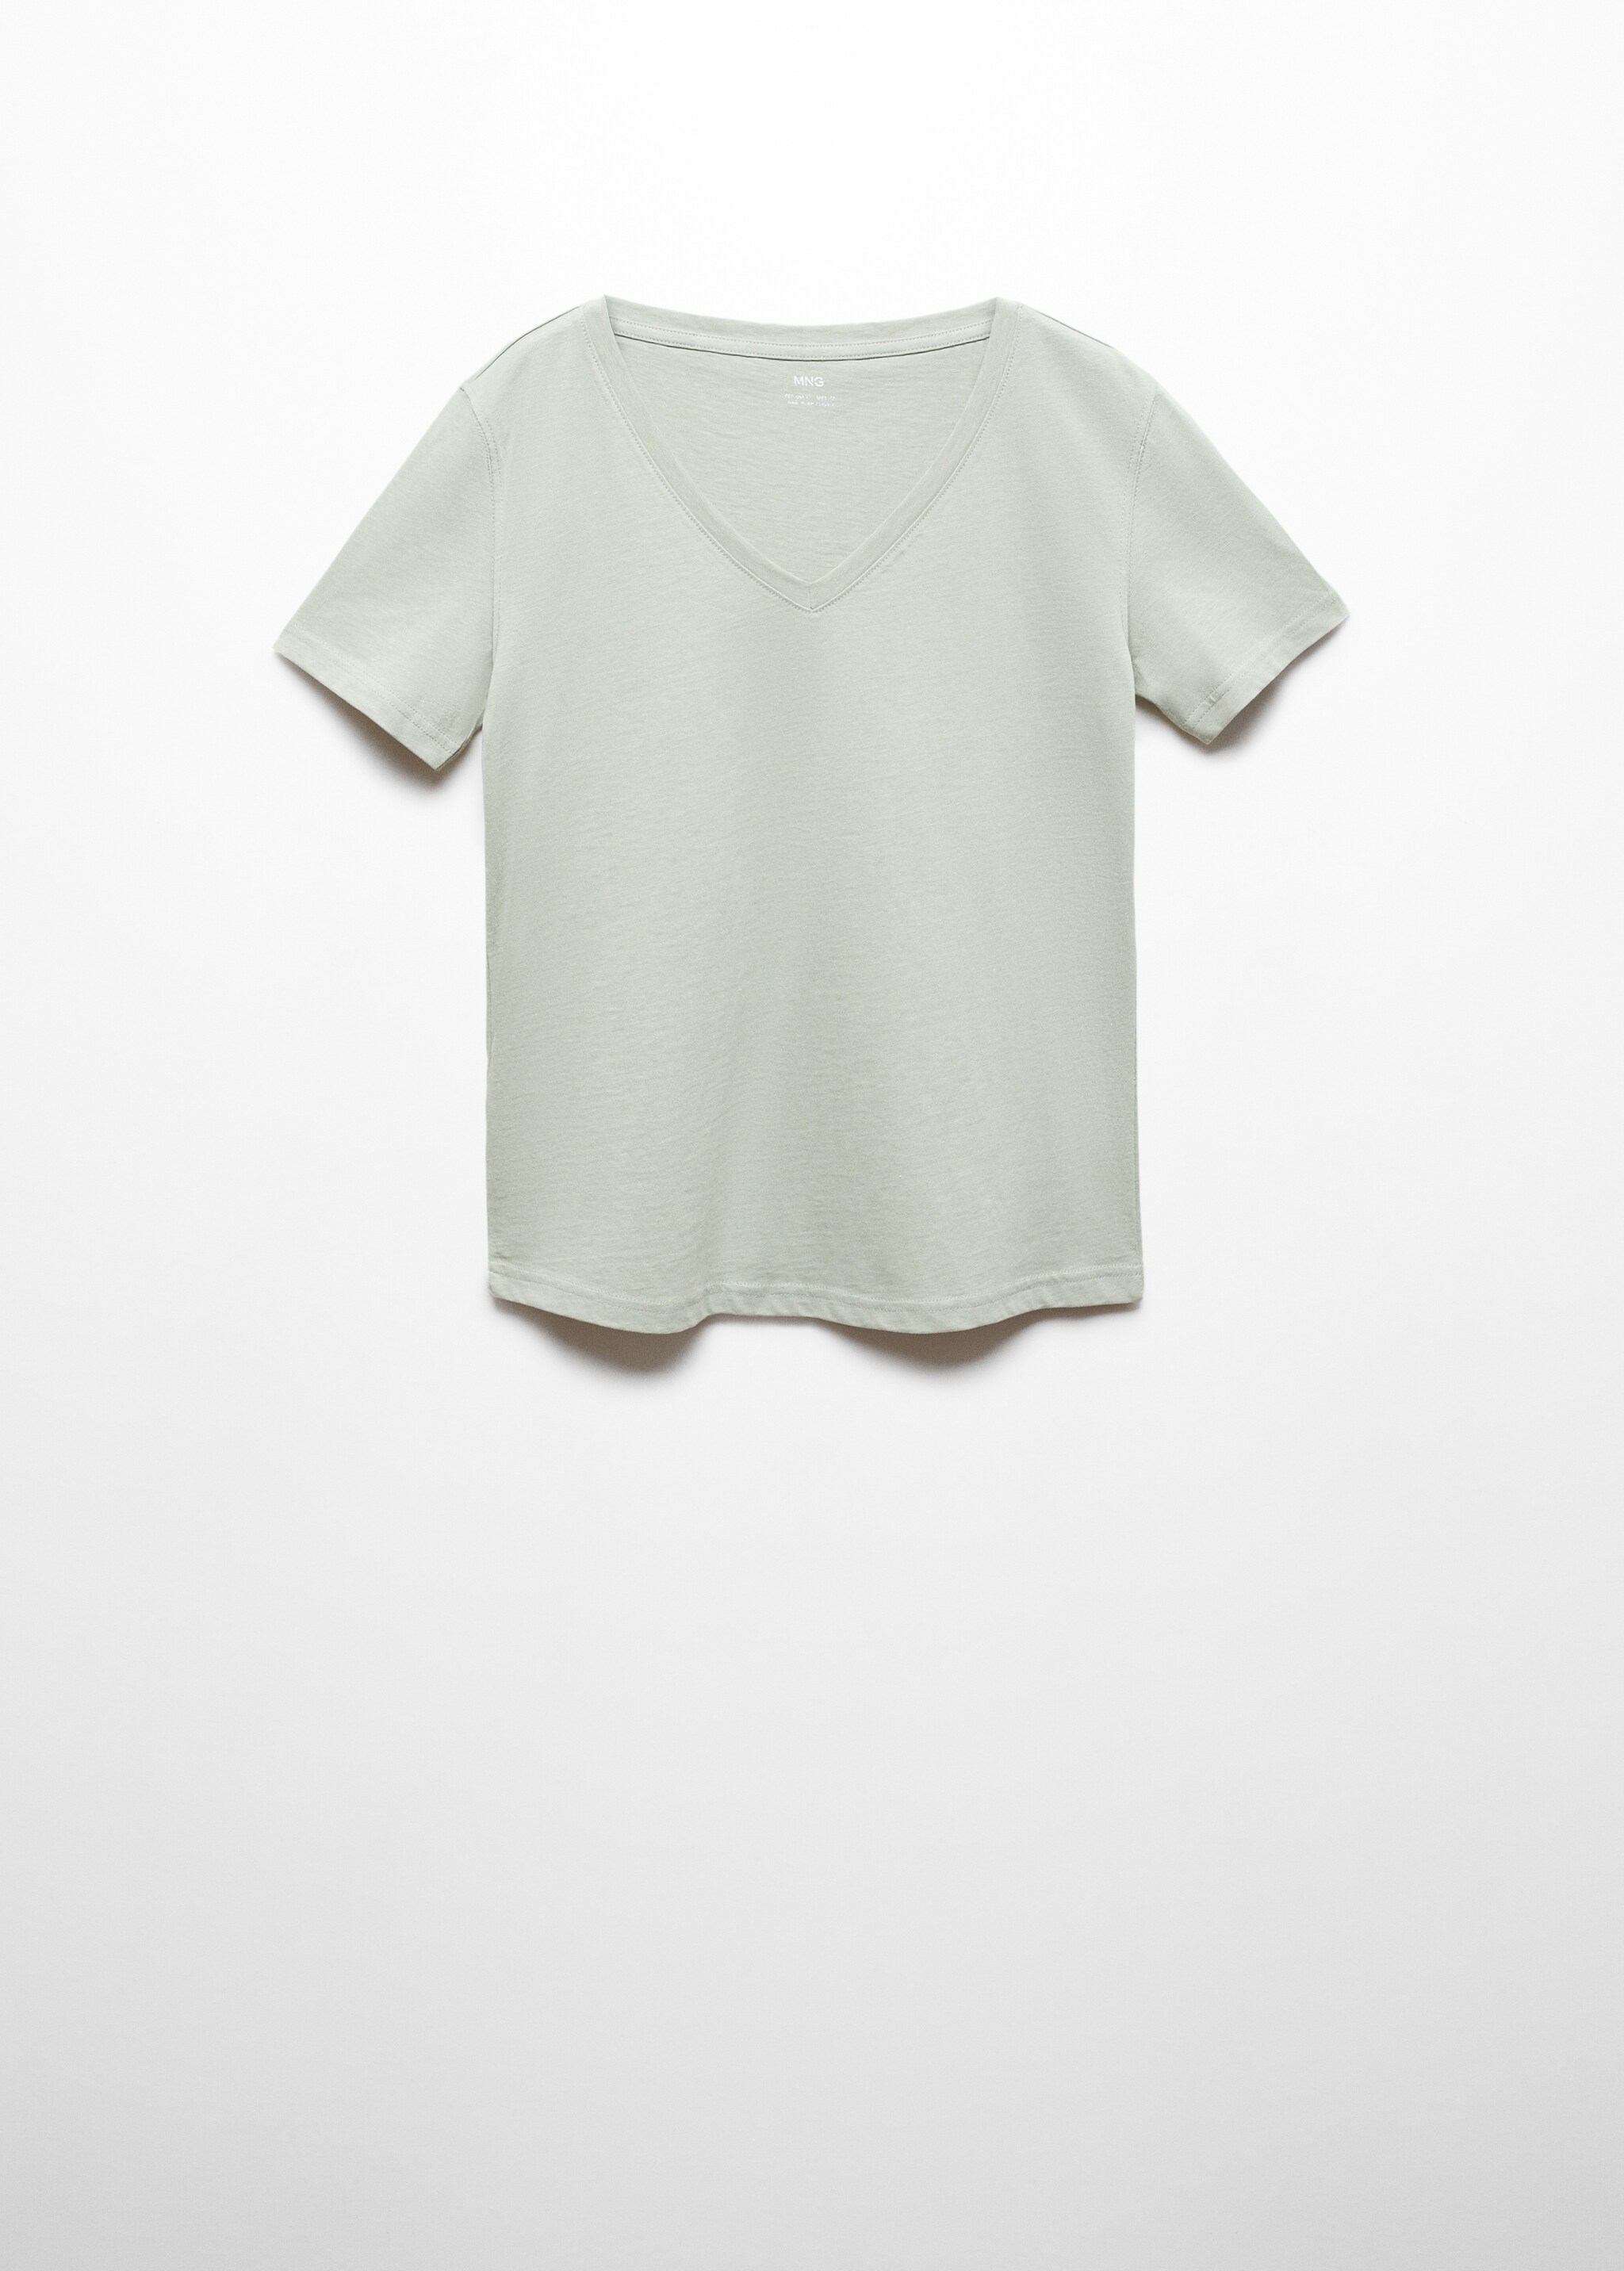 Camiseta cuello pico 100% algodón - Artículo sin modelo